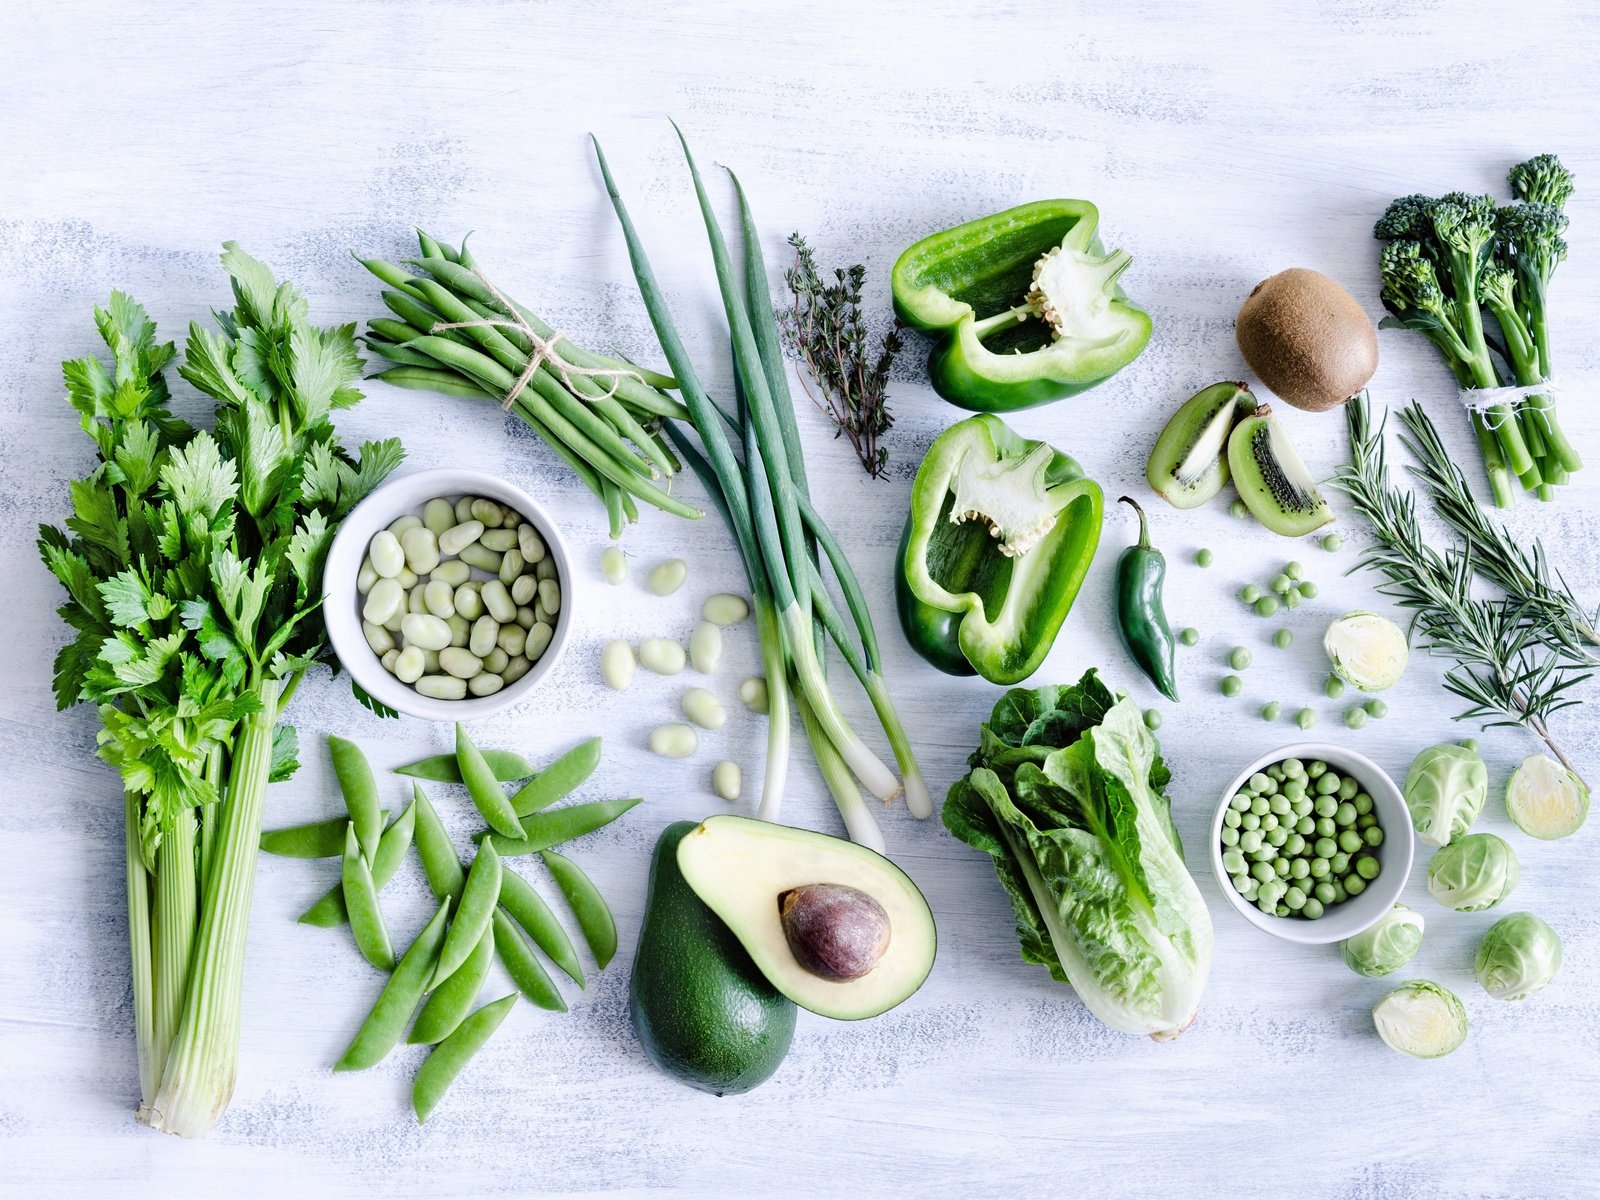 Овощи и зелень